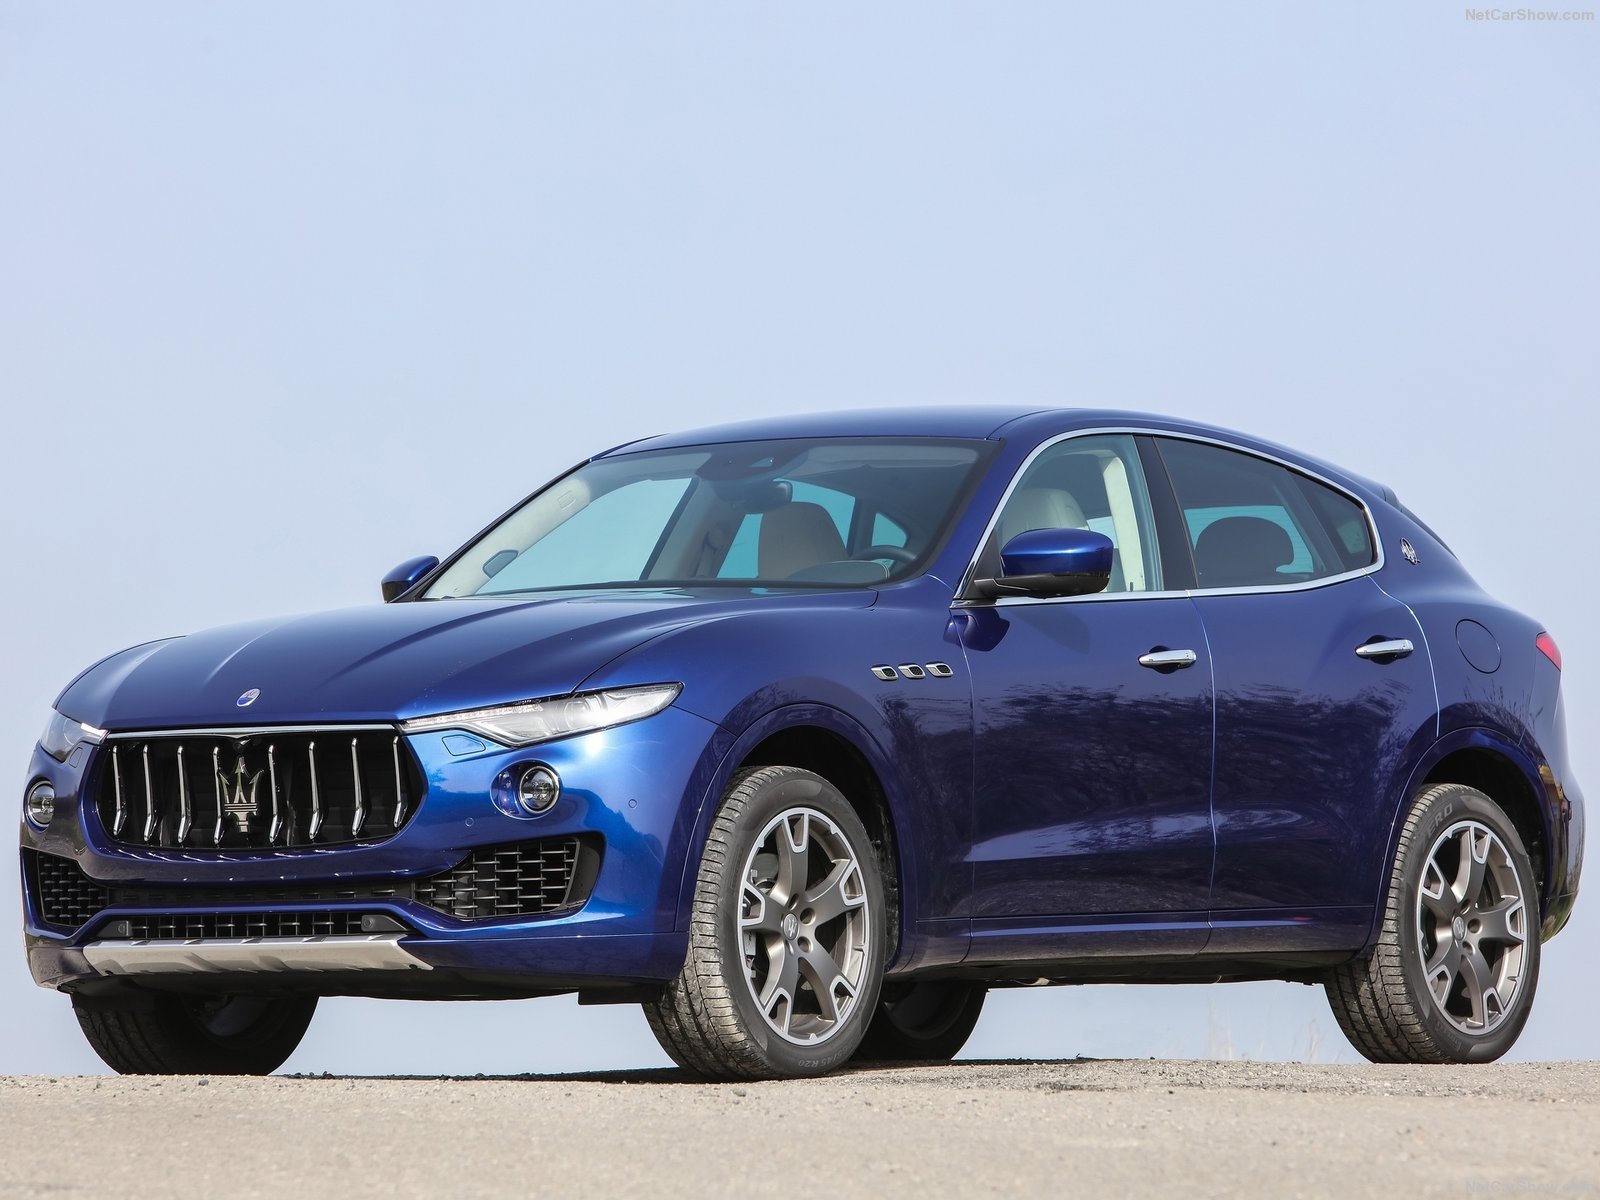 2016, Cars, Levante, Maserati, Suv, Blue Wallpaper